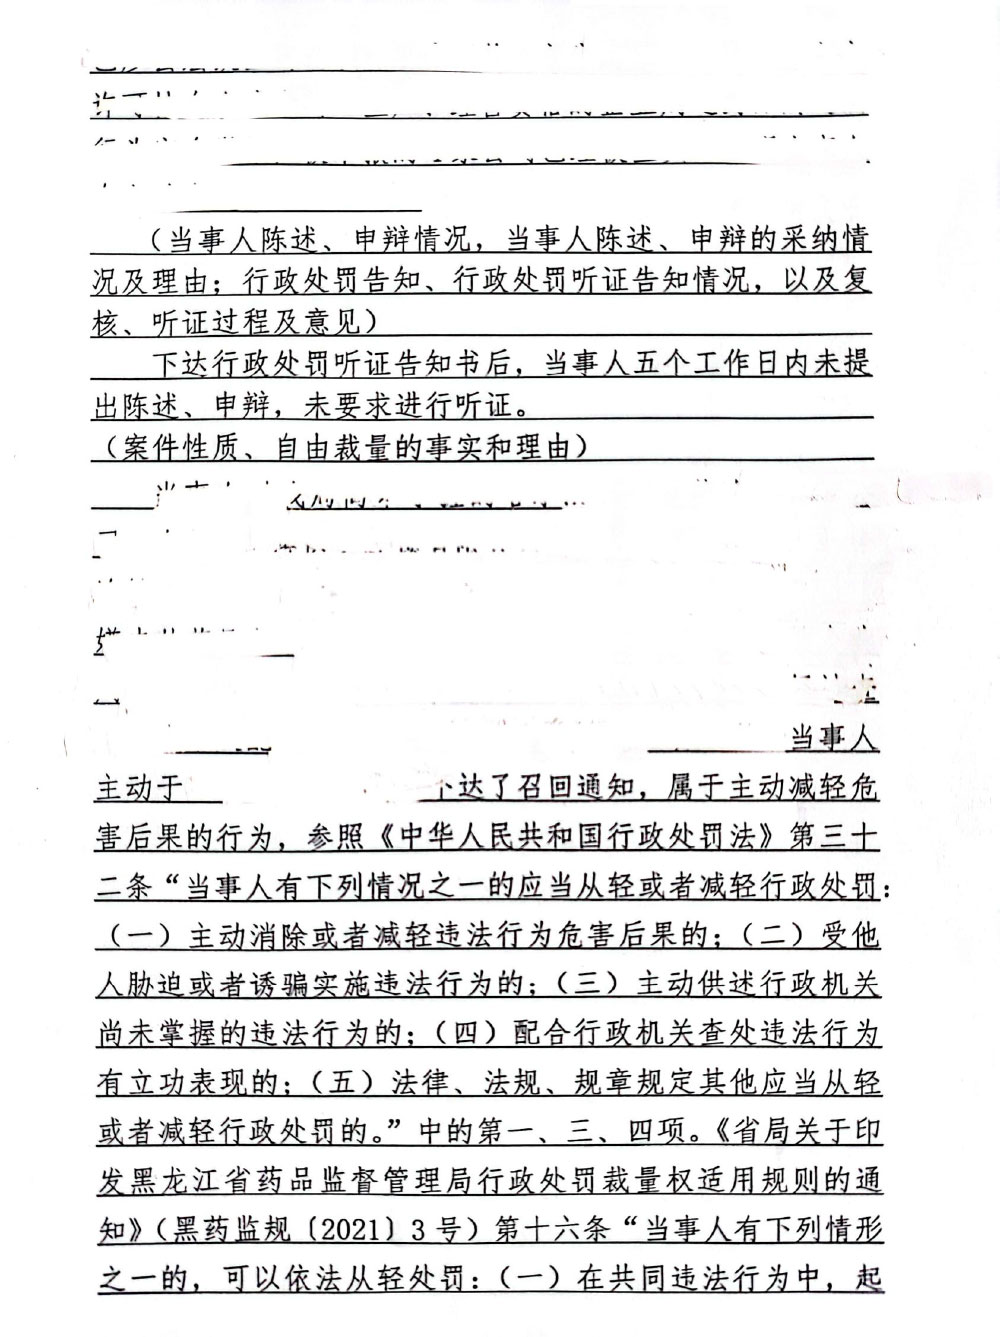 黑龙江省好医生大药房连锁有限公司未从药品上市许可持有人或者具有药品生产、经营资格的企业购进药品案